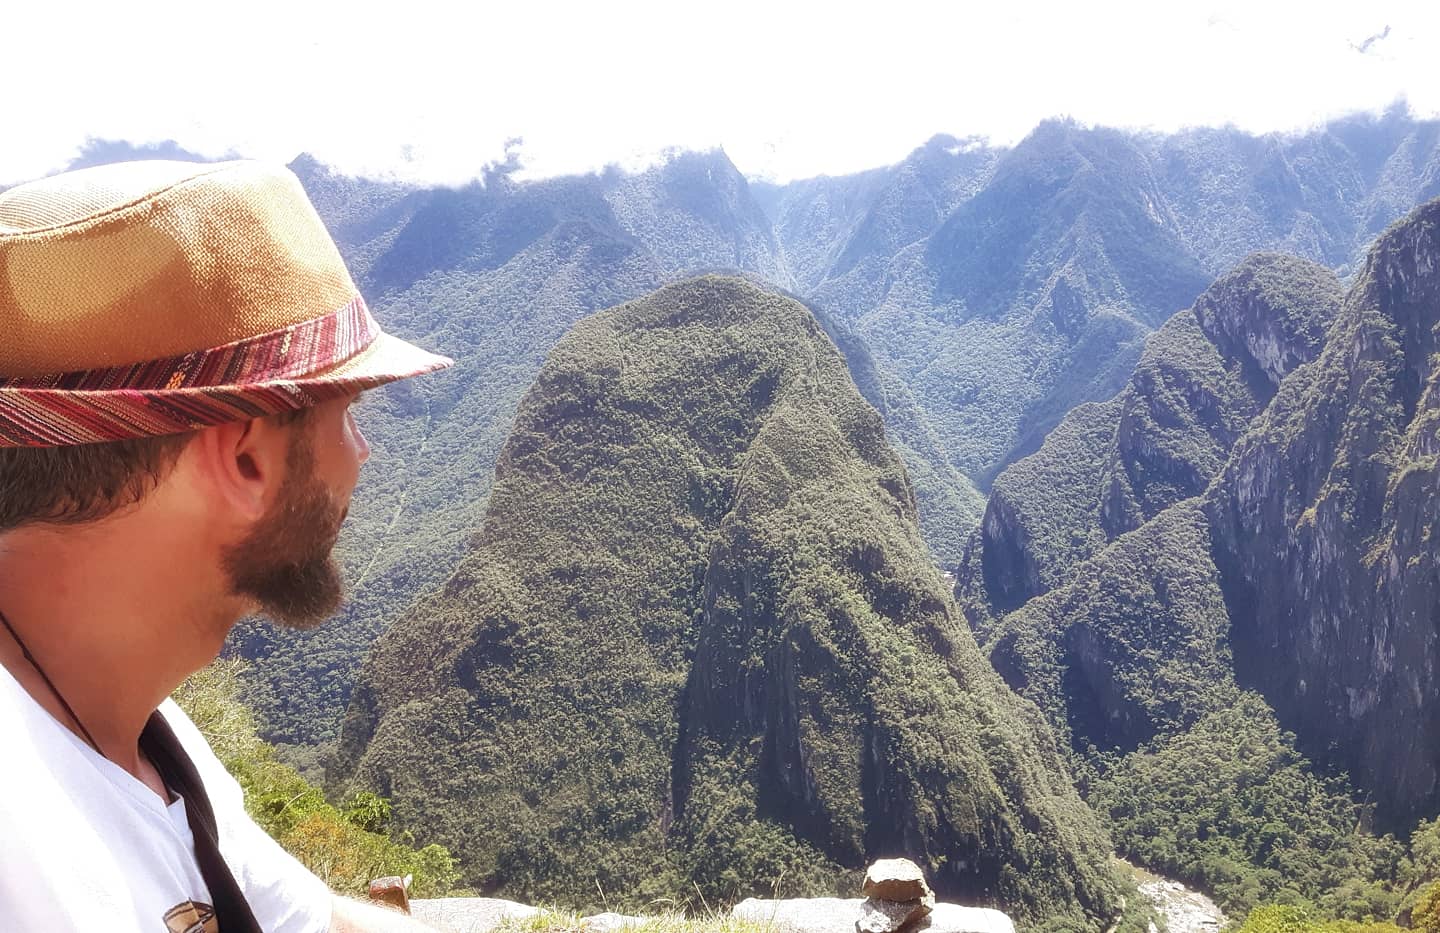 Picture in Machu Picchu